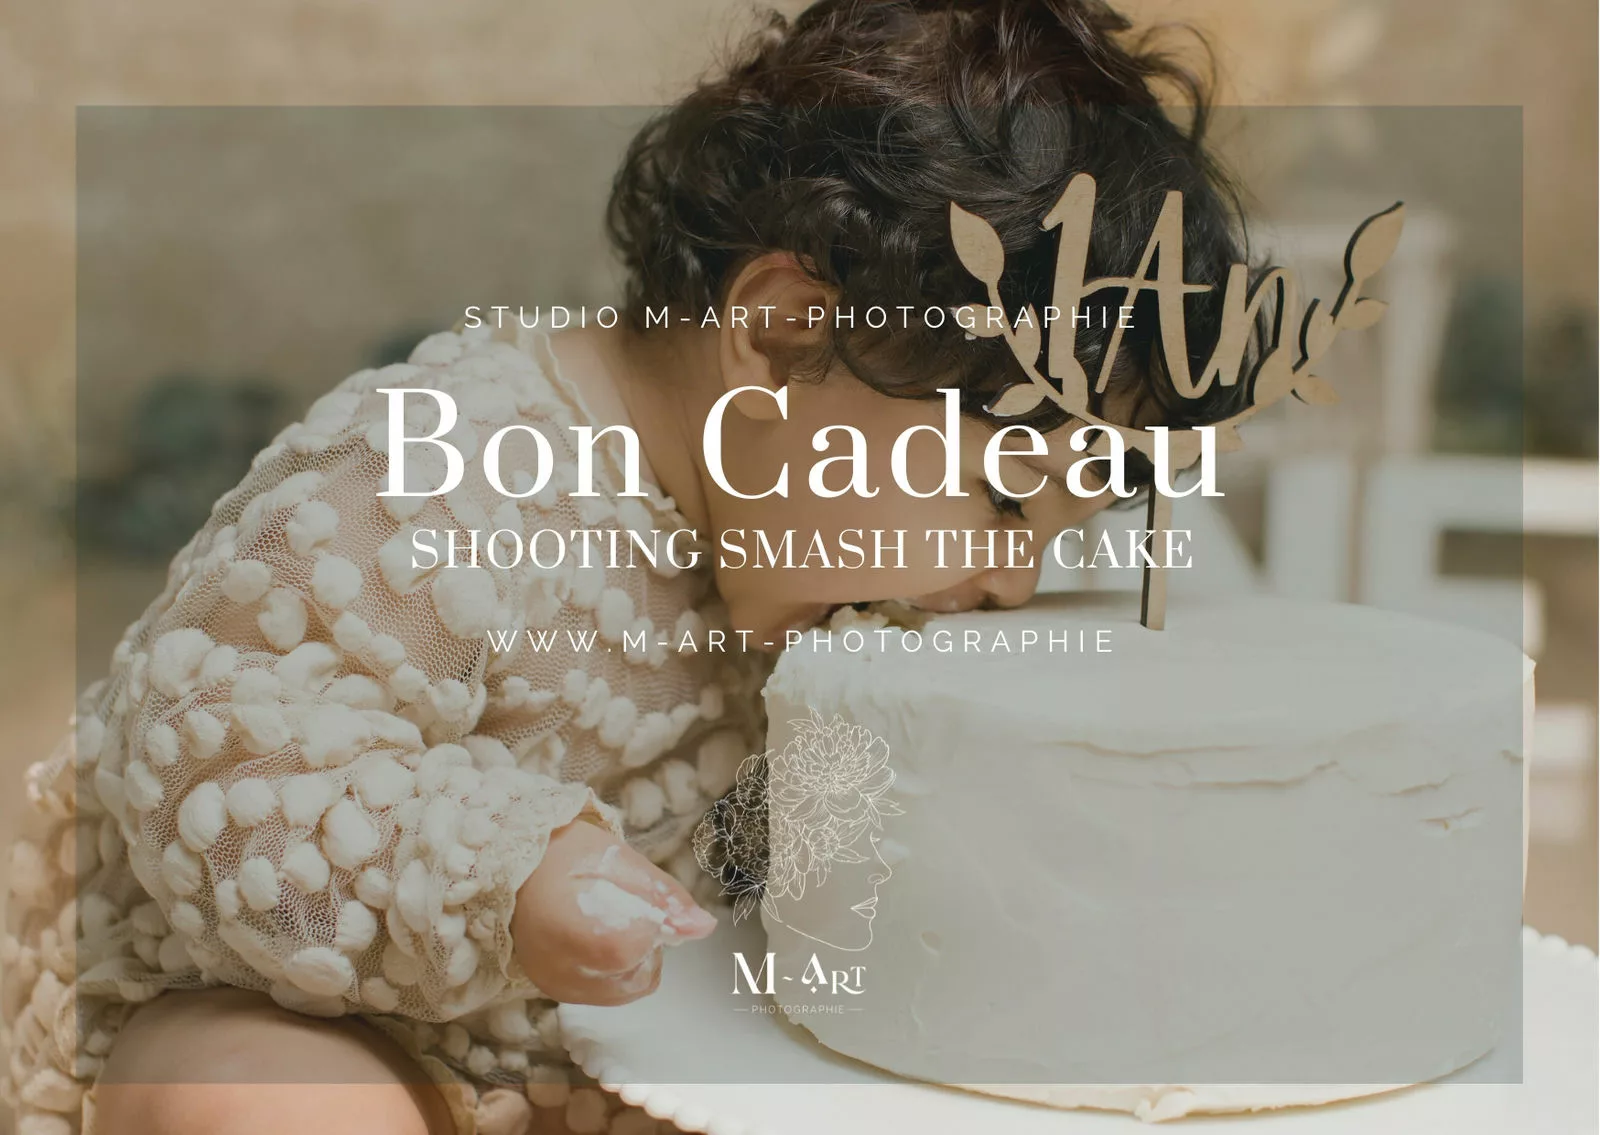 Bon cadeau photographie smash the cake Lyon - Chavanoz - Rhône-Alpes. Studio avec tenues et accessoires. M-art-photographie.